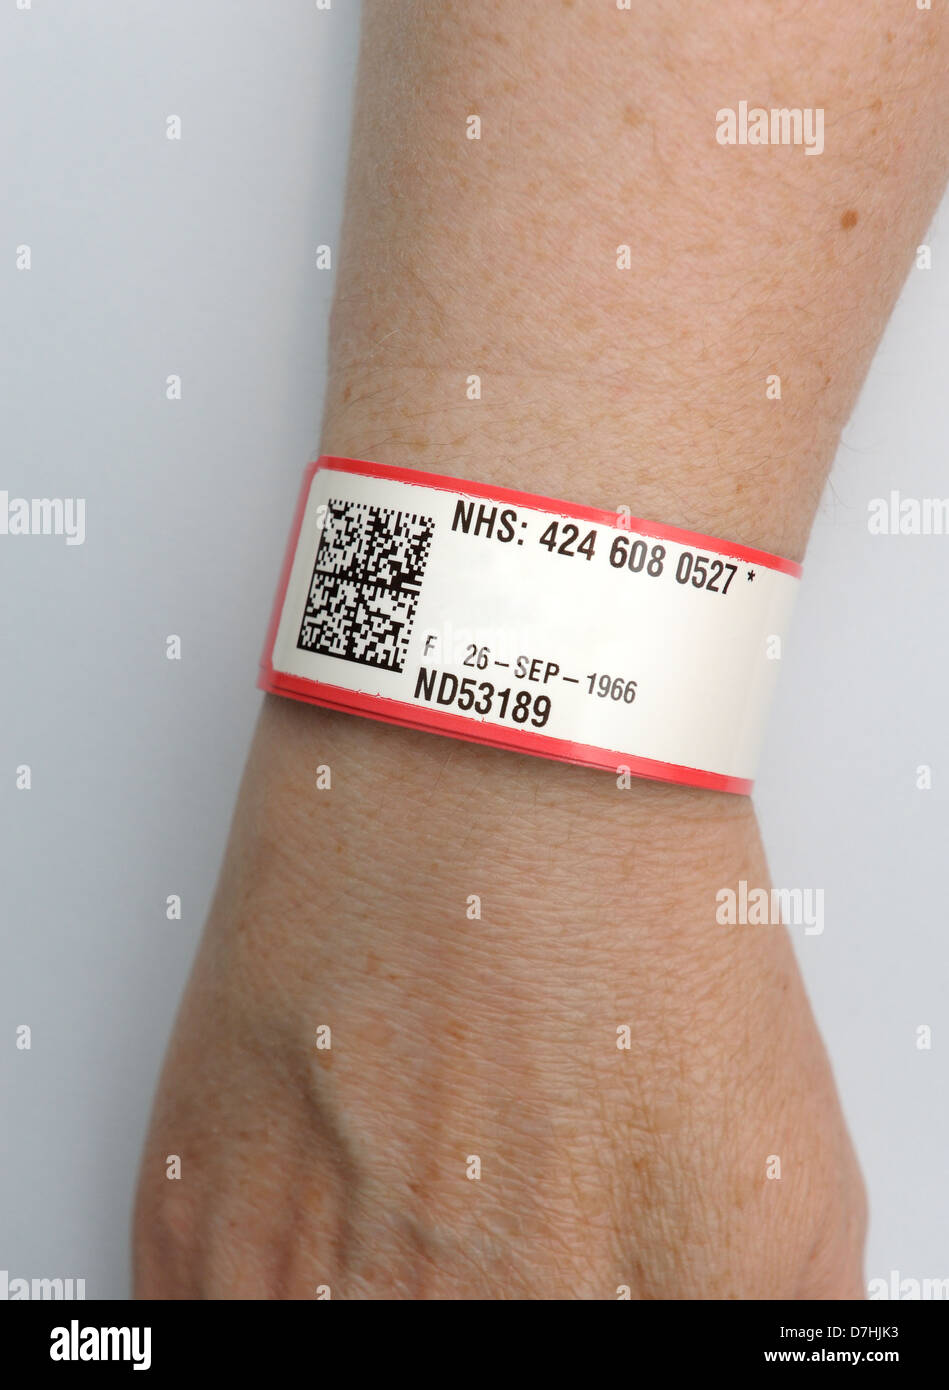 NHS-Patienten Identität-Armband. das rote Band bezeichnet eine Allergie  gegen Penicillin. Patienten Namen Digital entfernt Stockfotografie - Alamy